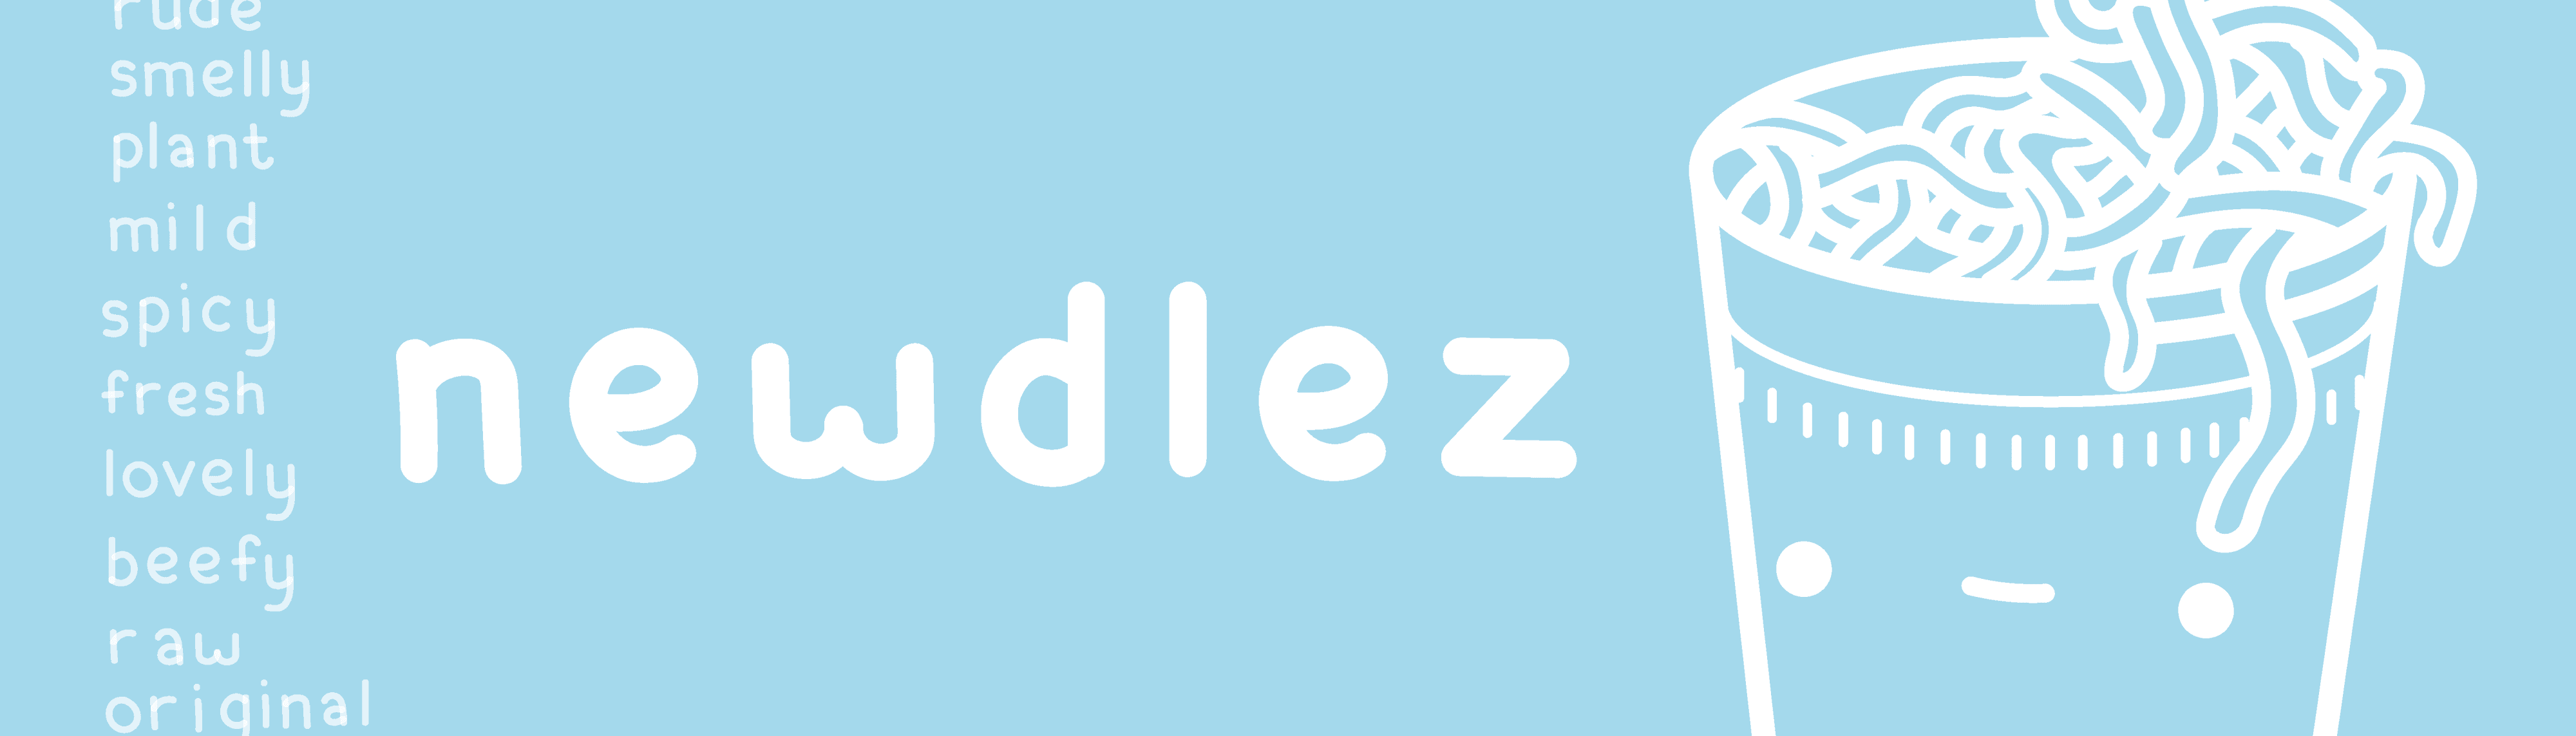 Newdlez banner